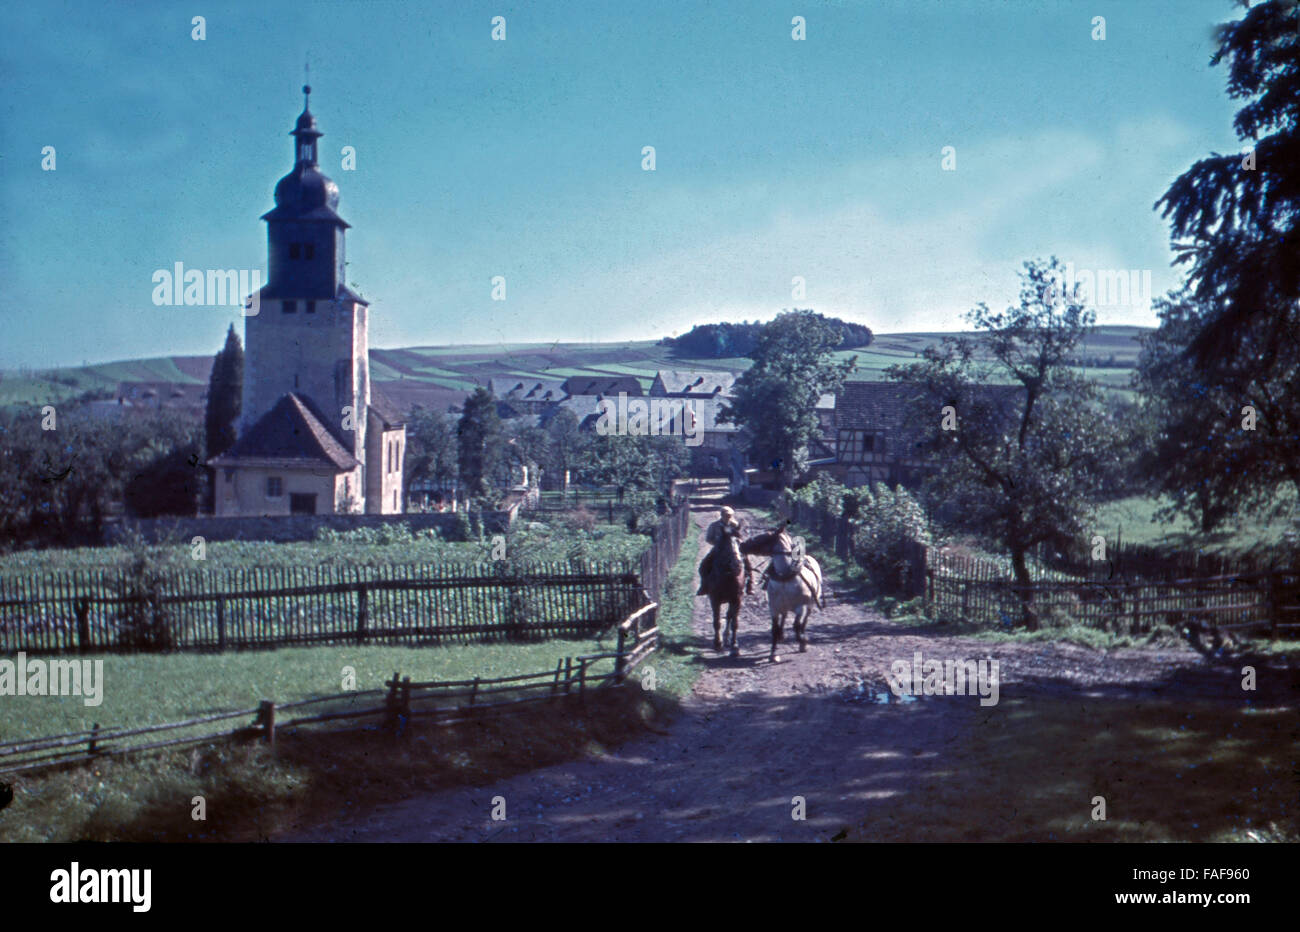 Die Kirche im Dorf Traun in Turingia, Deutschland 1930er Jahre. La chiesa del villaggio di Traun in Turingia, Germania 1930s. Foto Stock